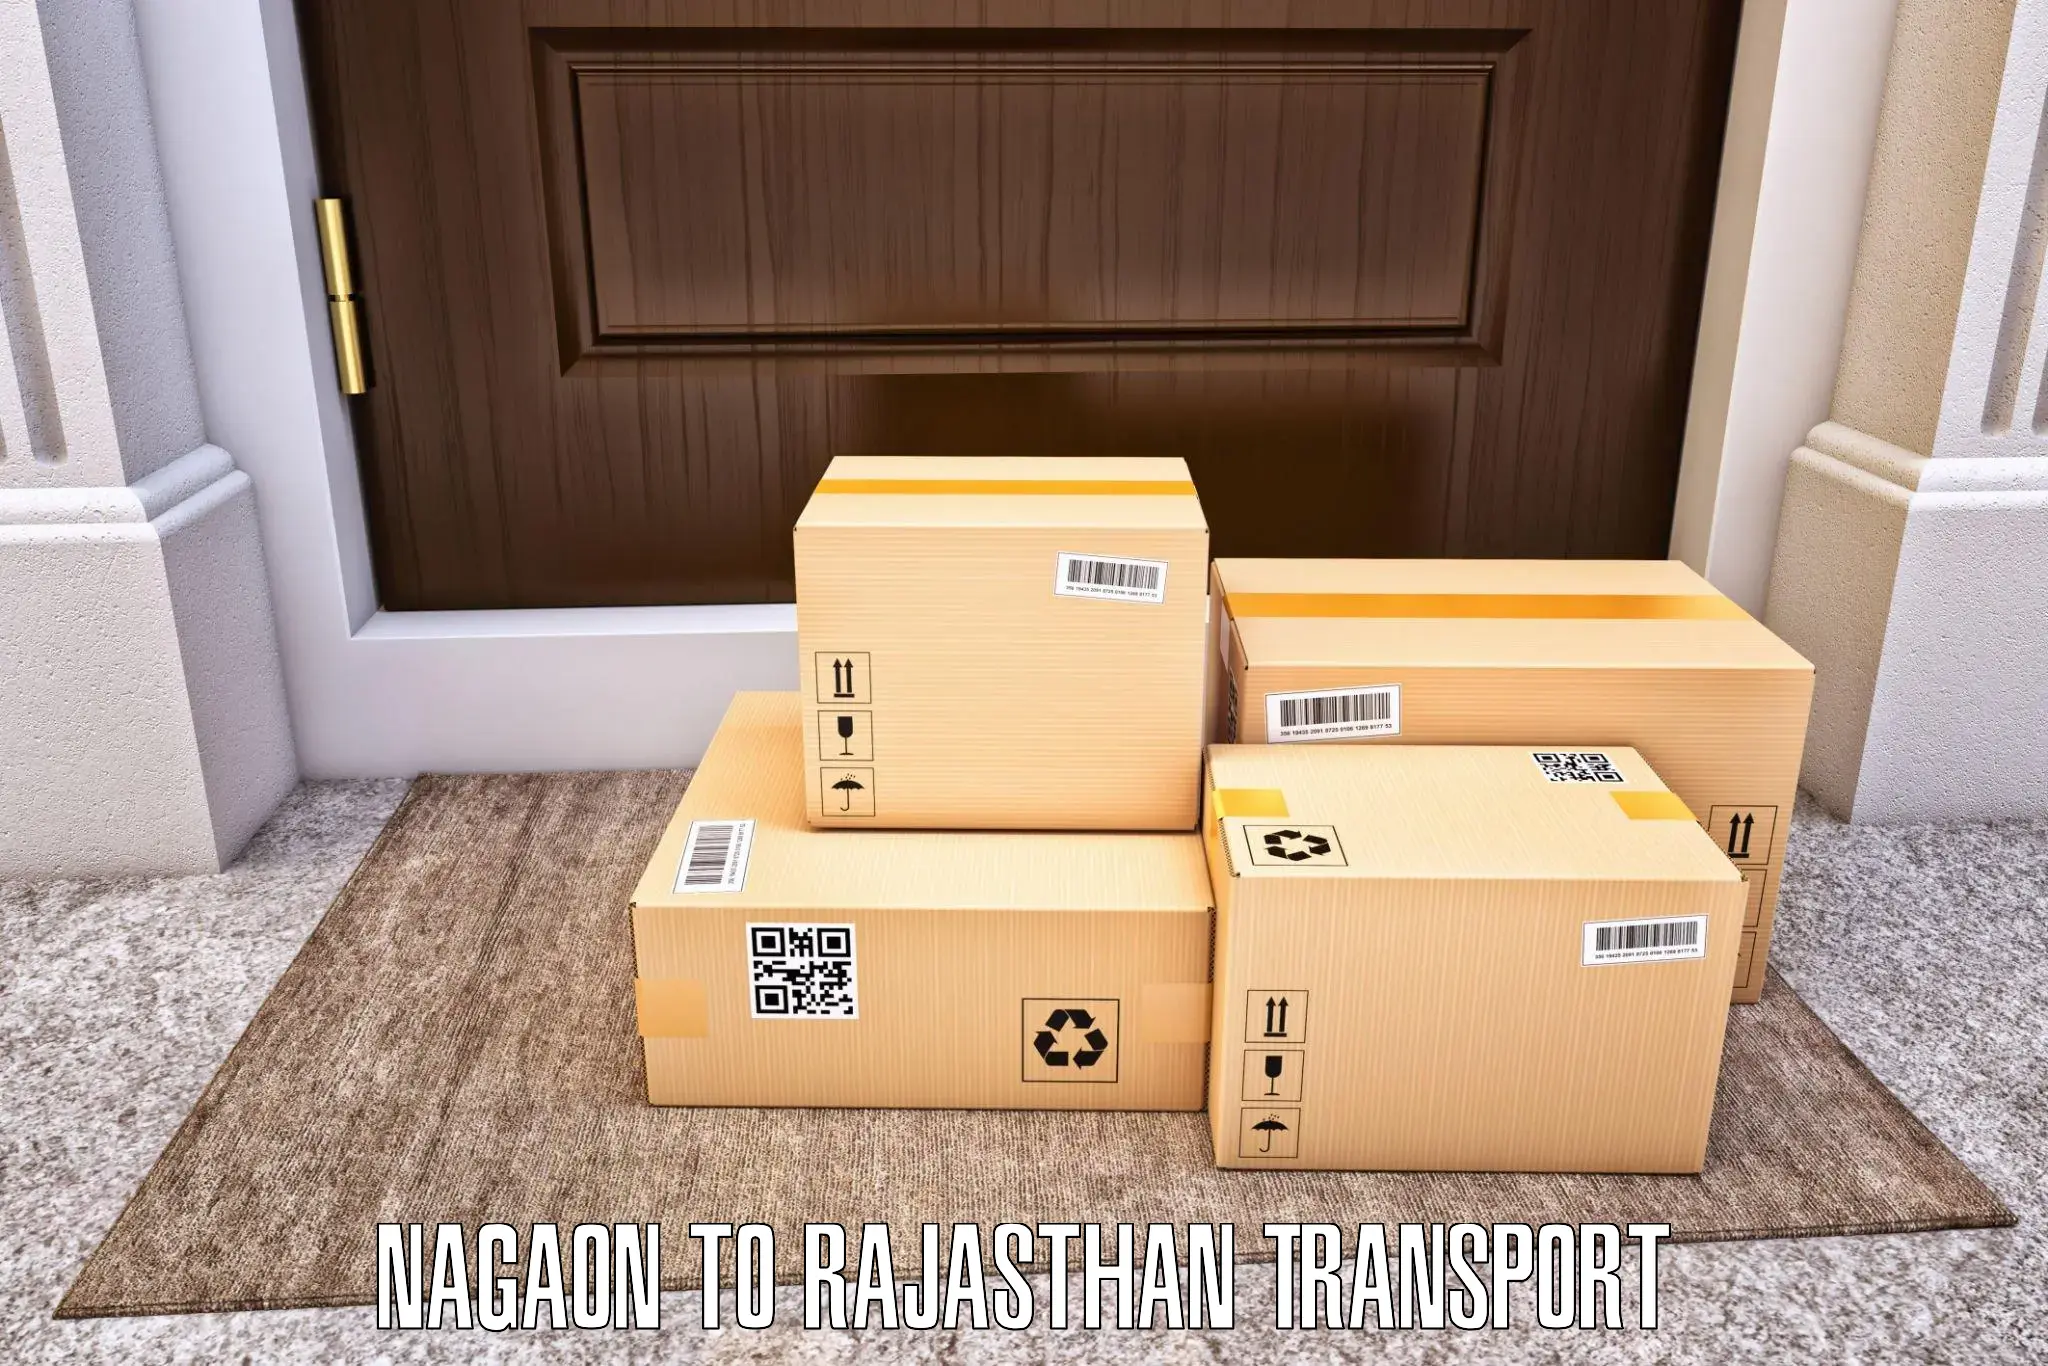 Vehicle transport services Nagaon to Kumbhalgarh